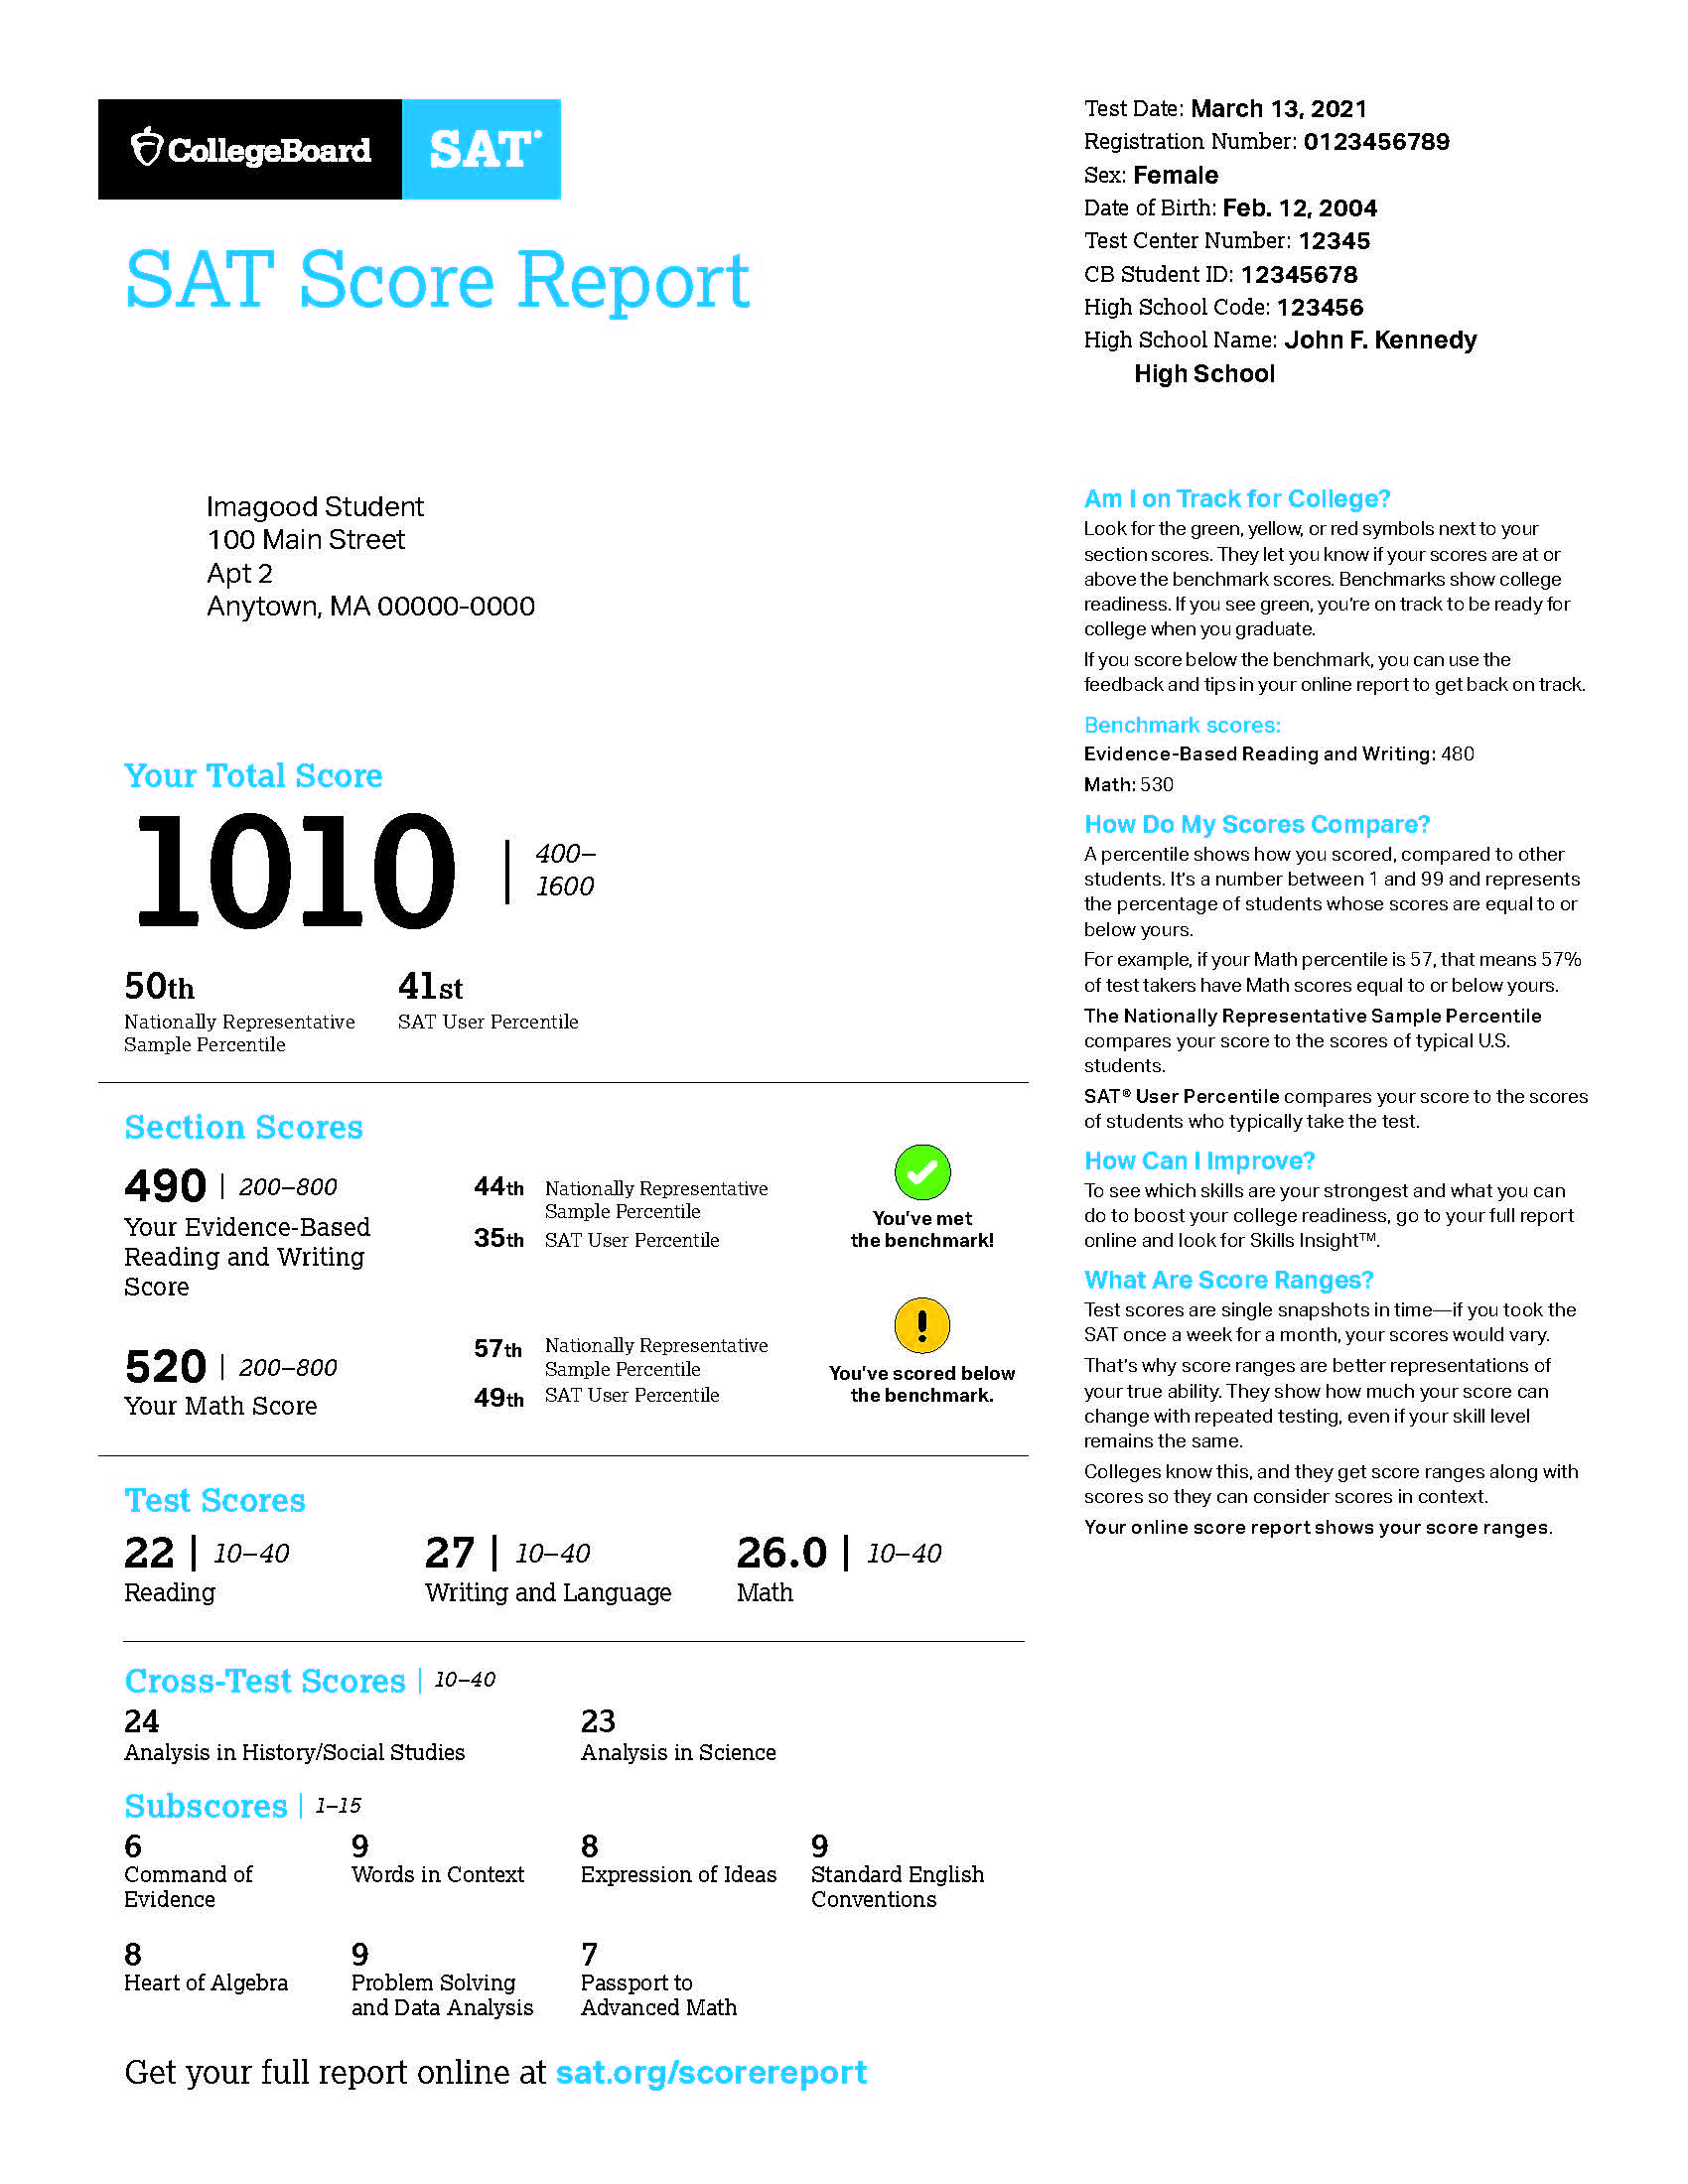 Understanding Your SAT Score Report C2 Education